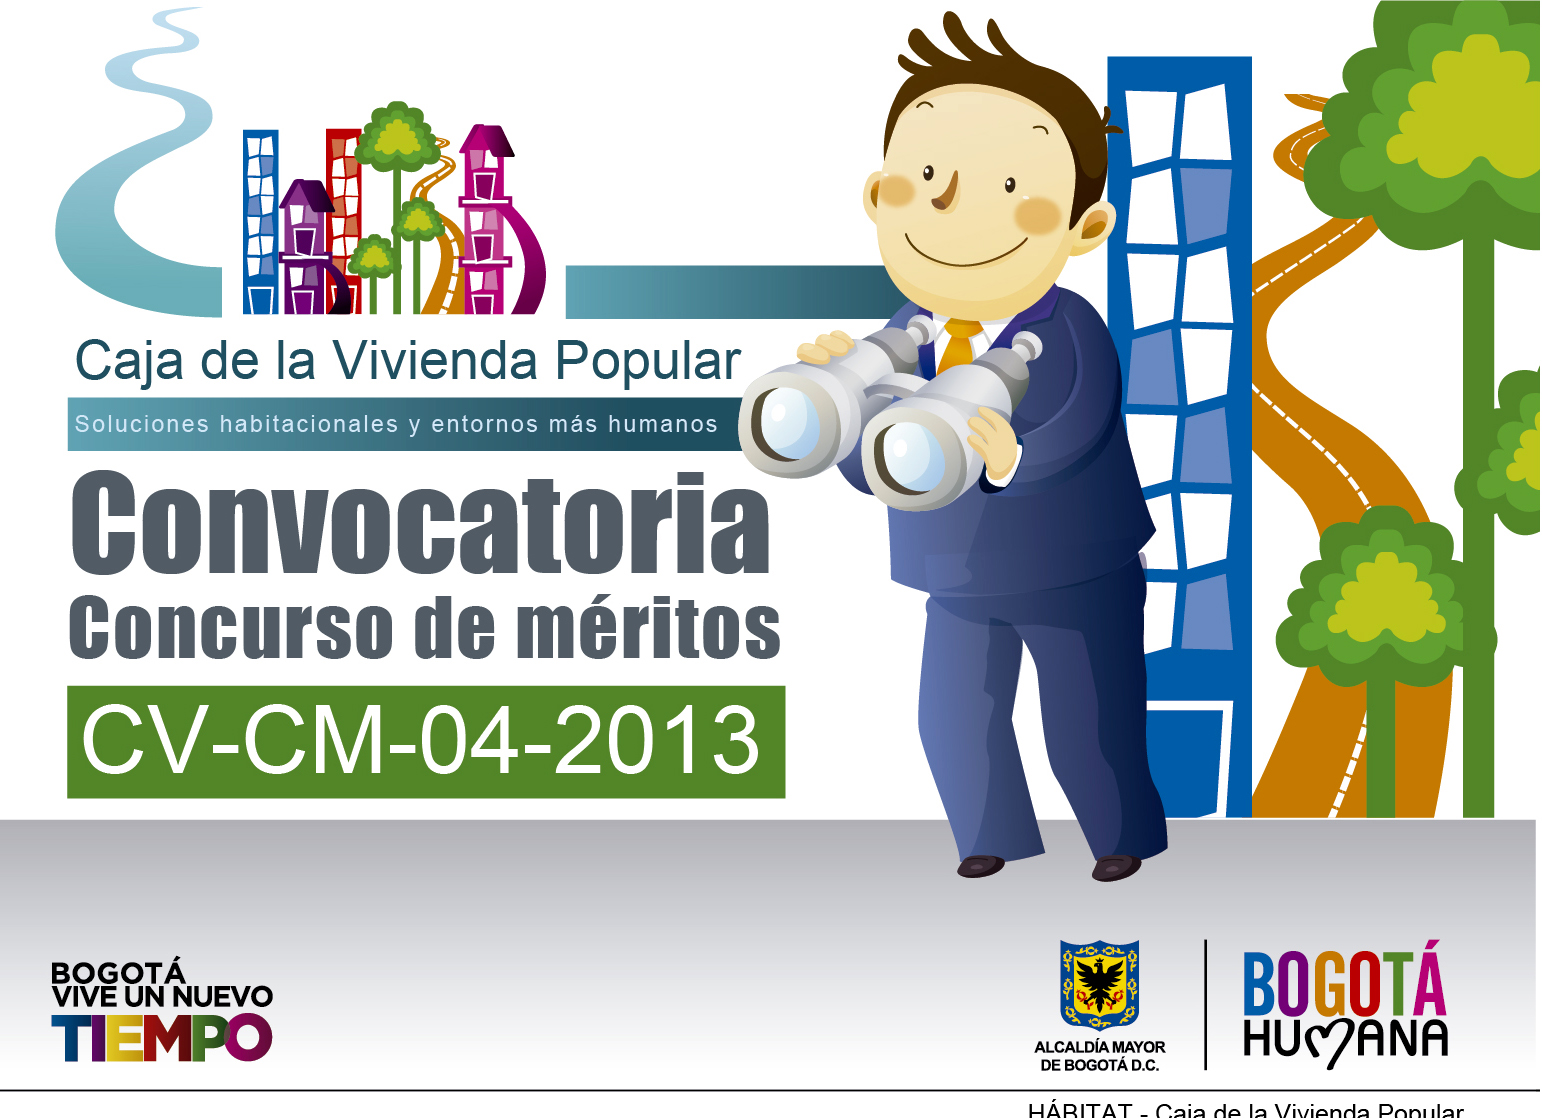 CONCURSO DE MERITOS  CV-CM-04-2013